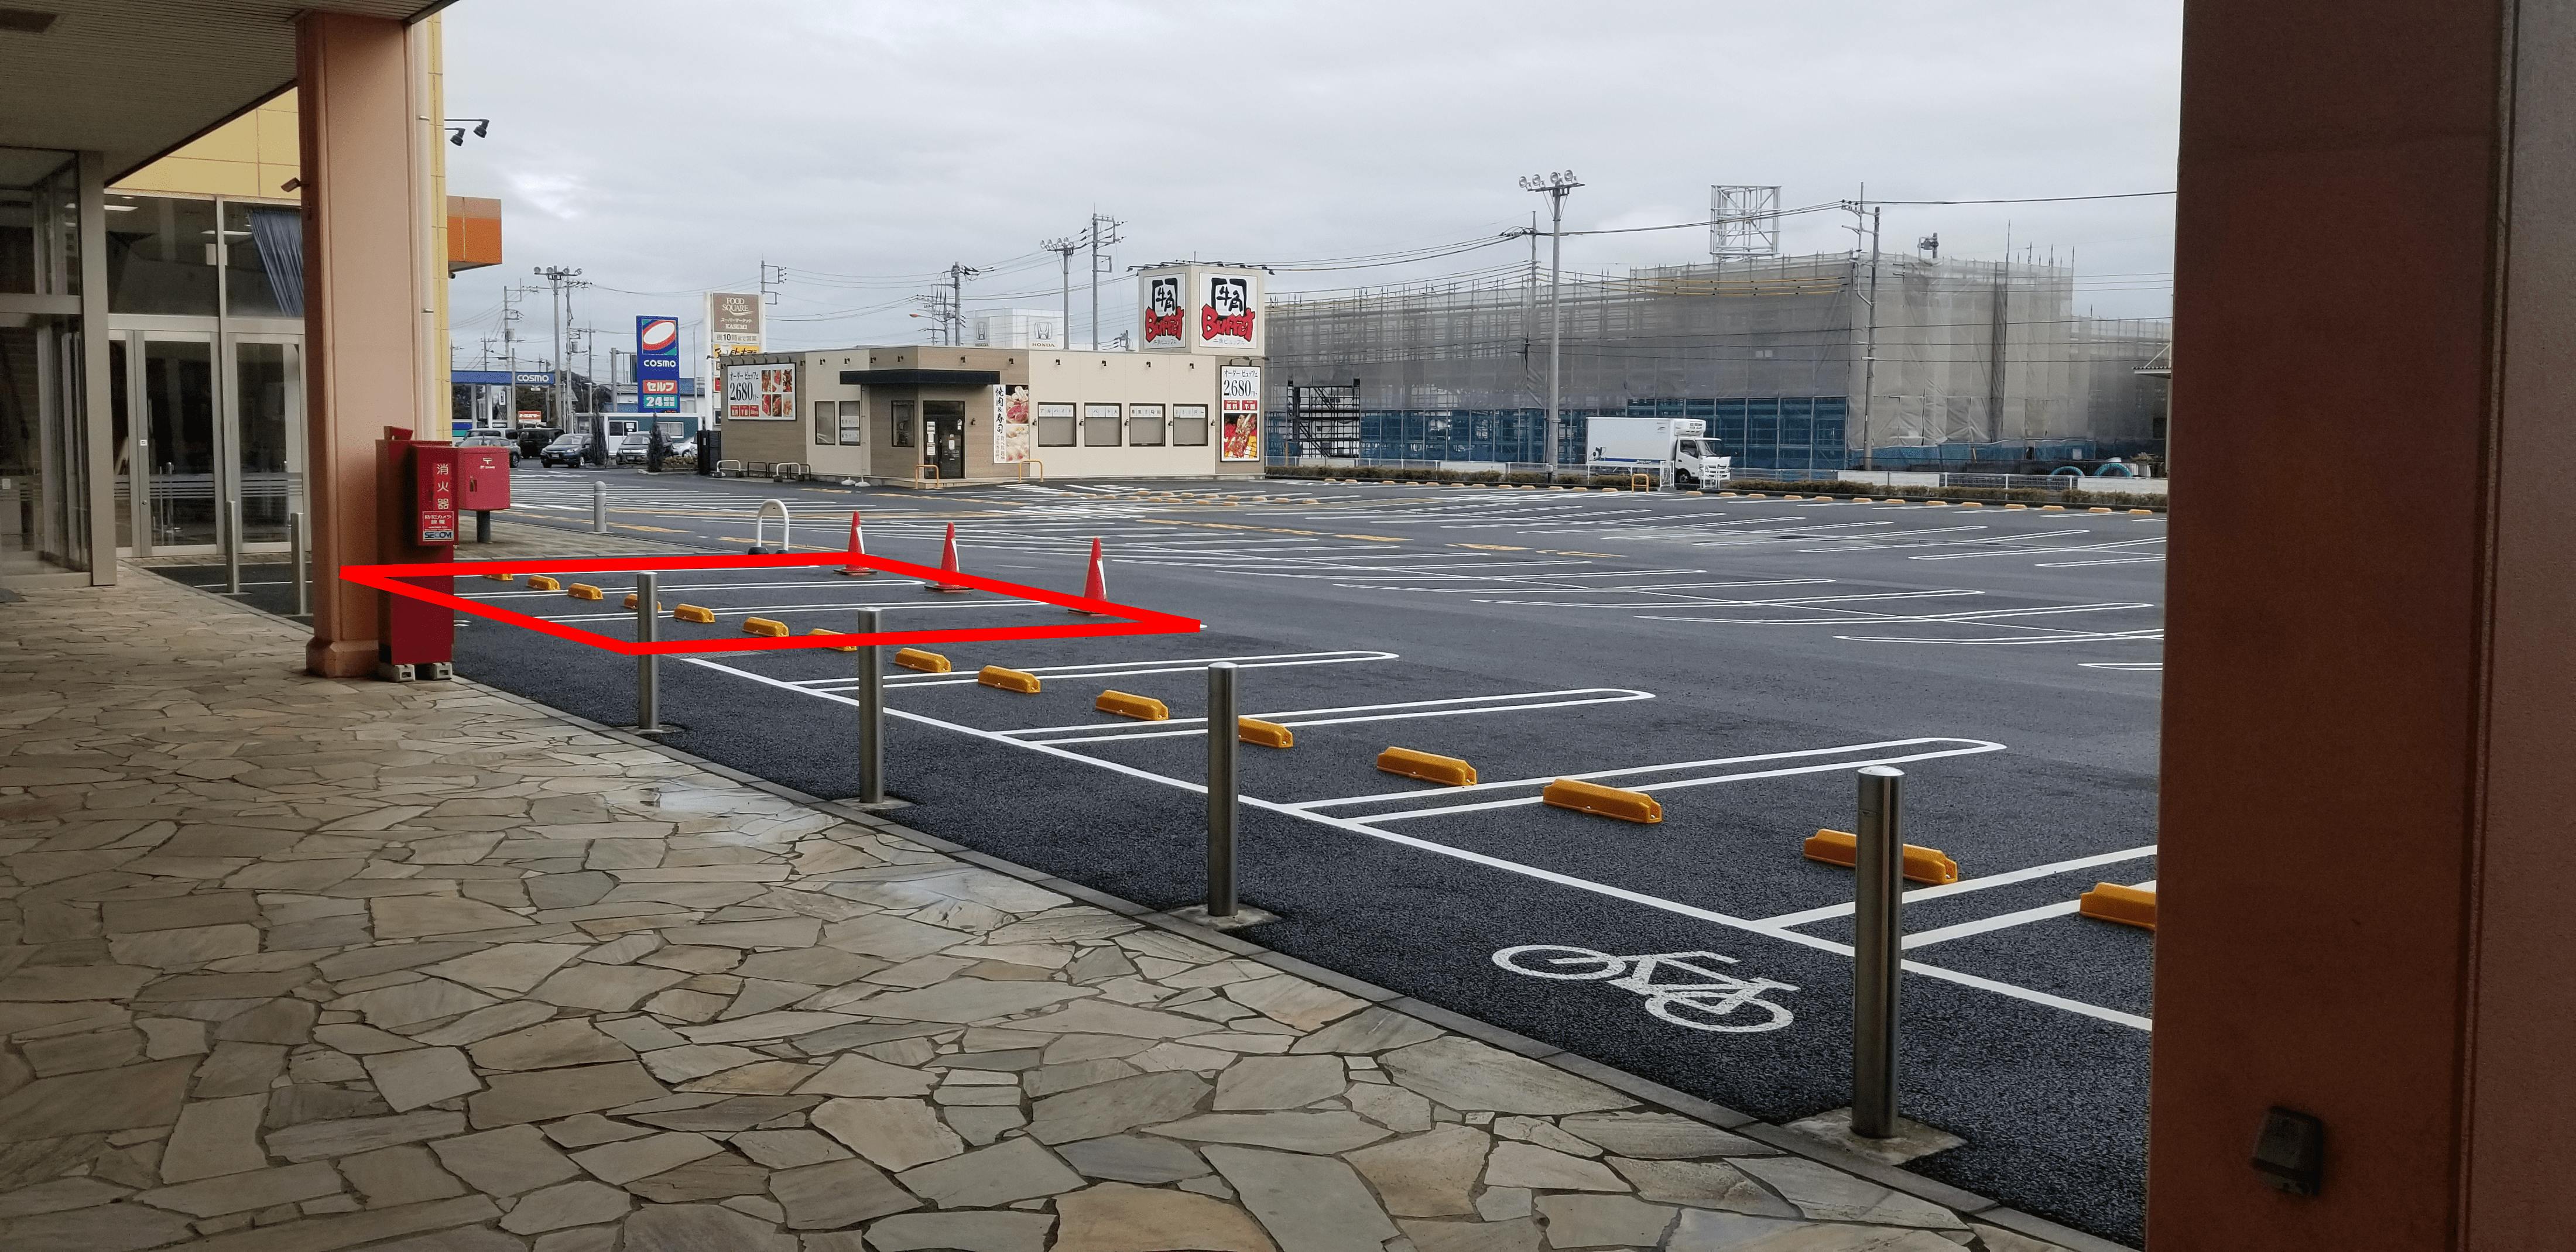 正面駐車場、向かって右側３台分の駐車スペースです。目立ちます。